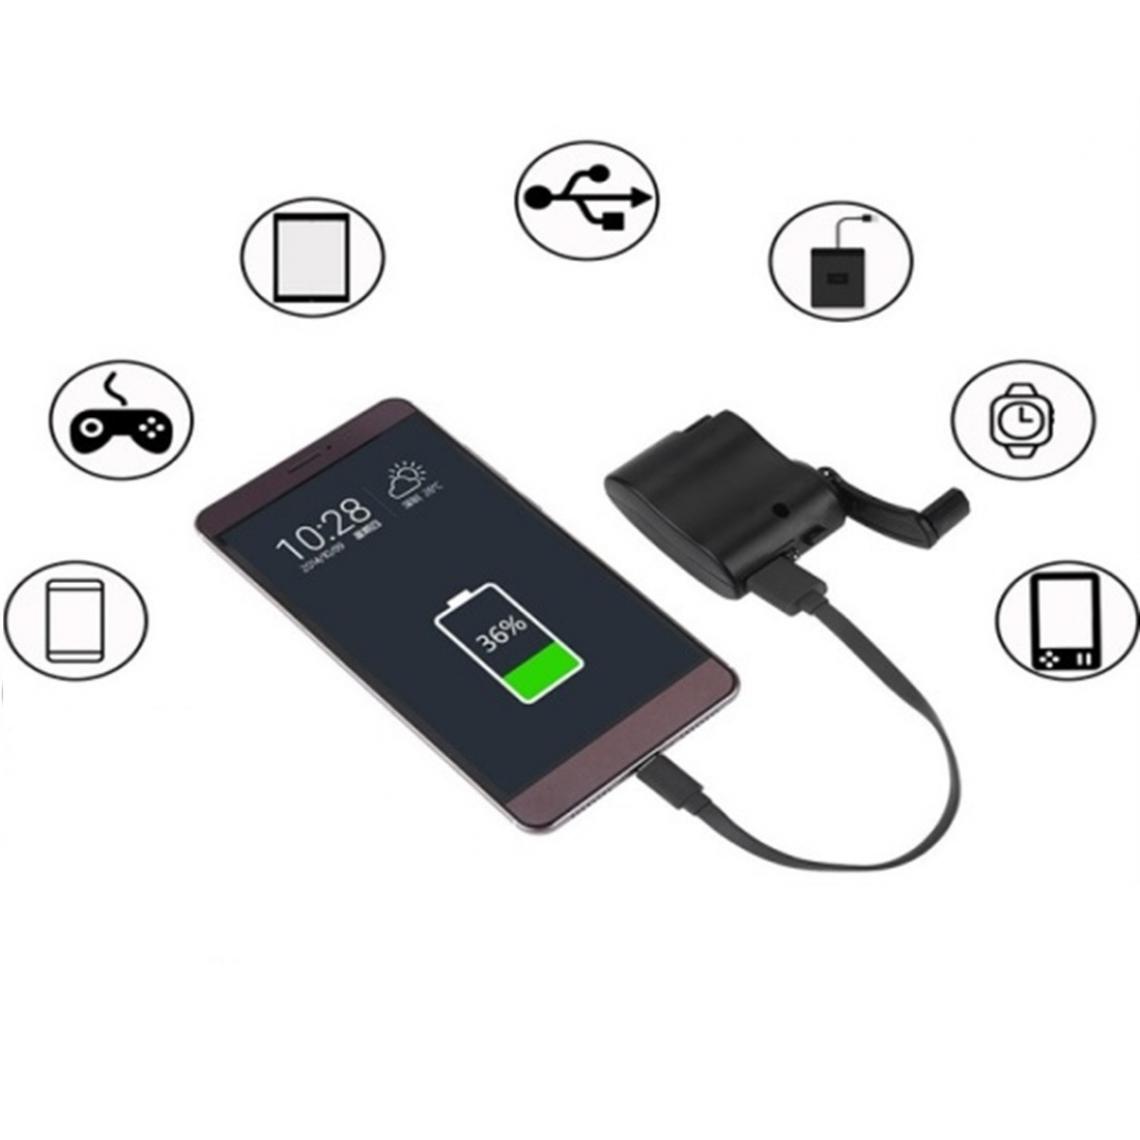 Shot - Dynamo pour IPHONE 5/5S Smartphone Chargeur USB Batterie Manivelle Secours (NOIR) - Autres accessoires smartphone